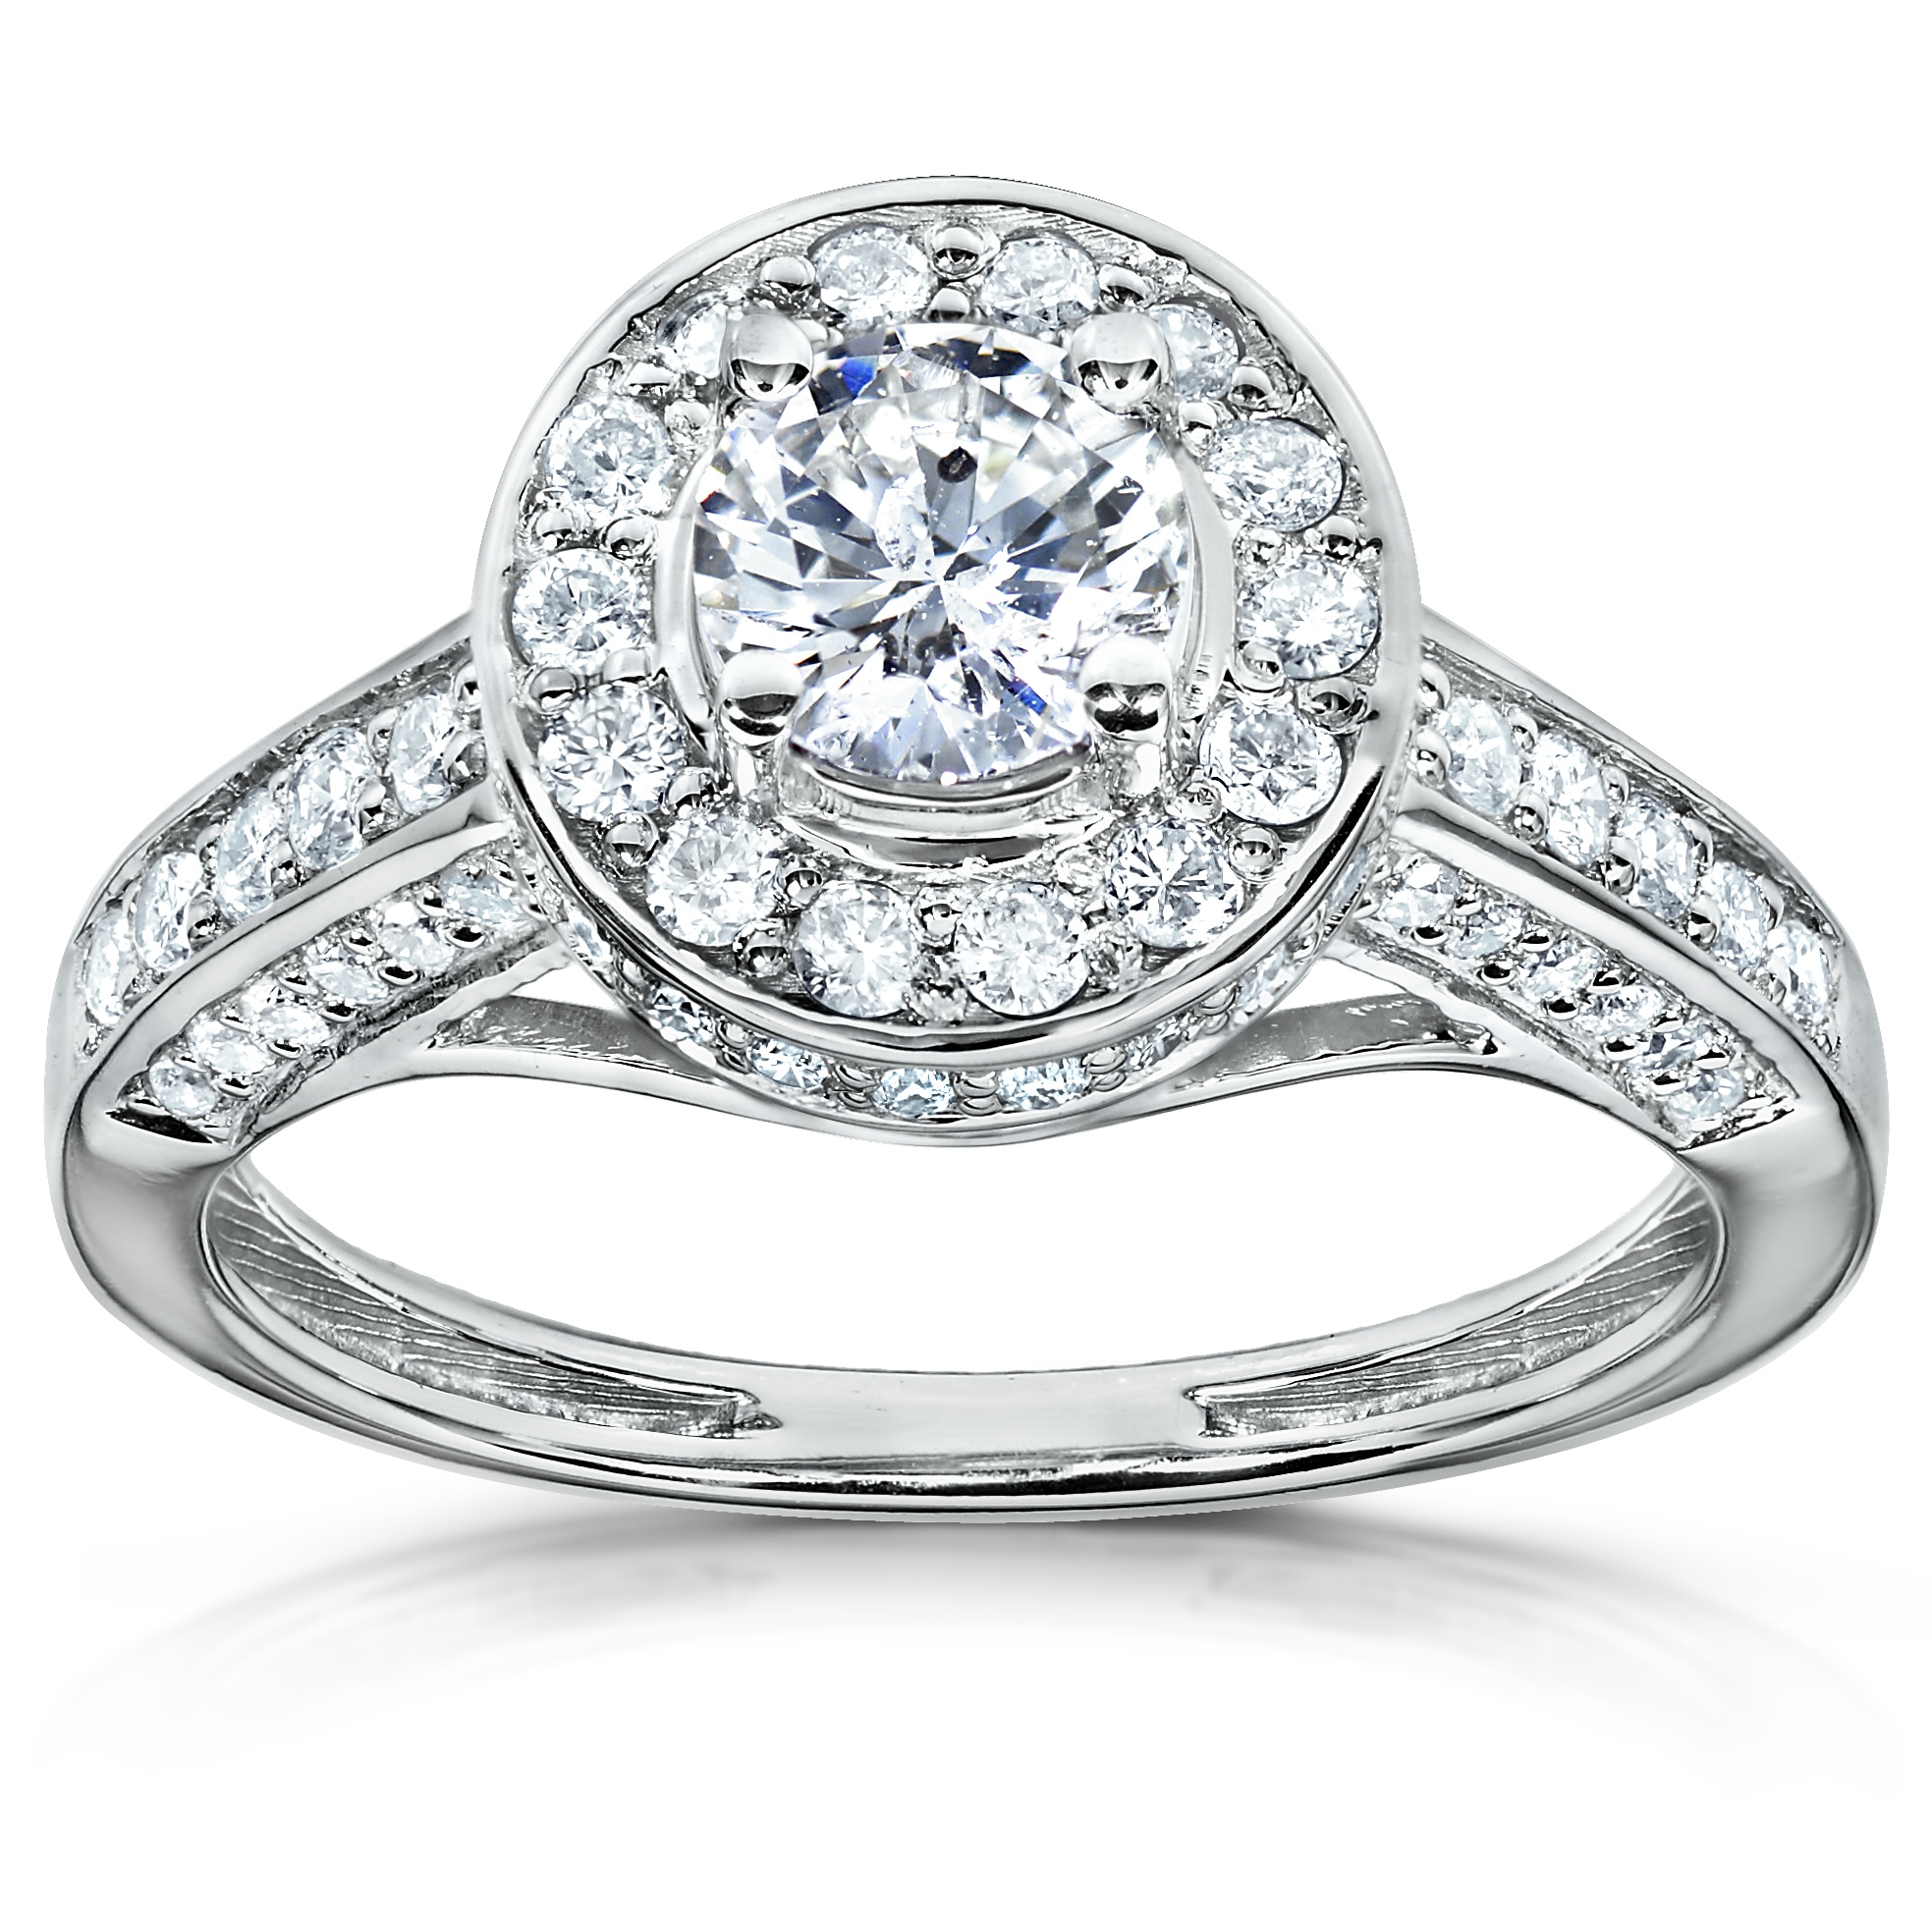 14k Gold 3/4ct TDW Round cut Diamond Engagement Ring (H I, I1 I2 